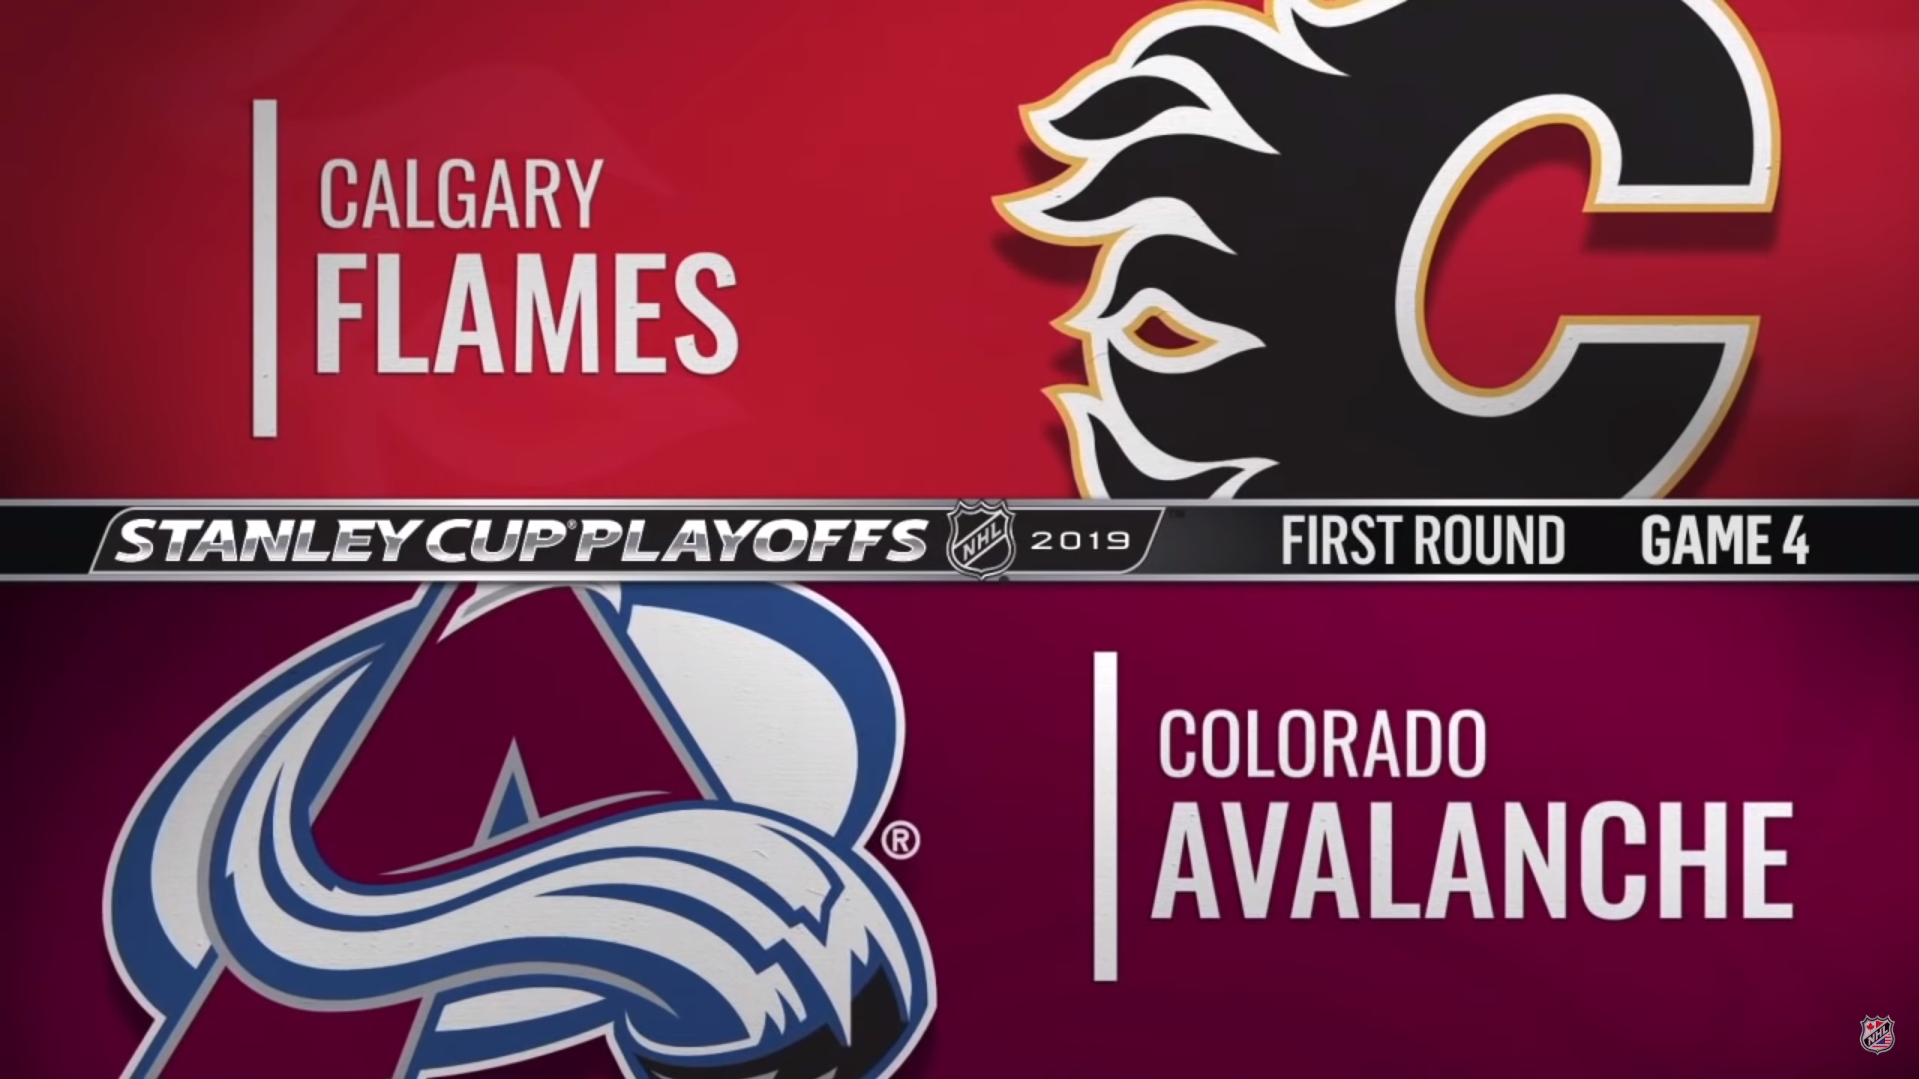 Calgary Flames - Colorado Avalanche